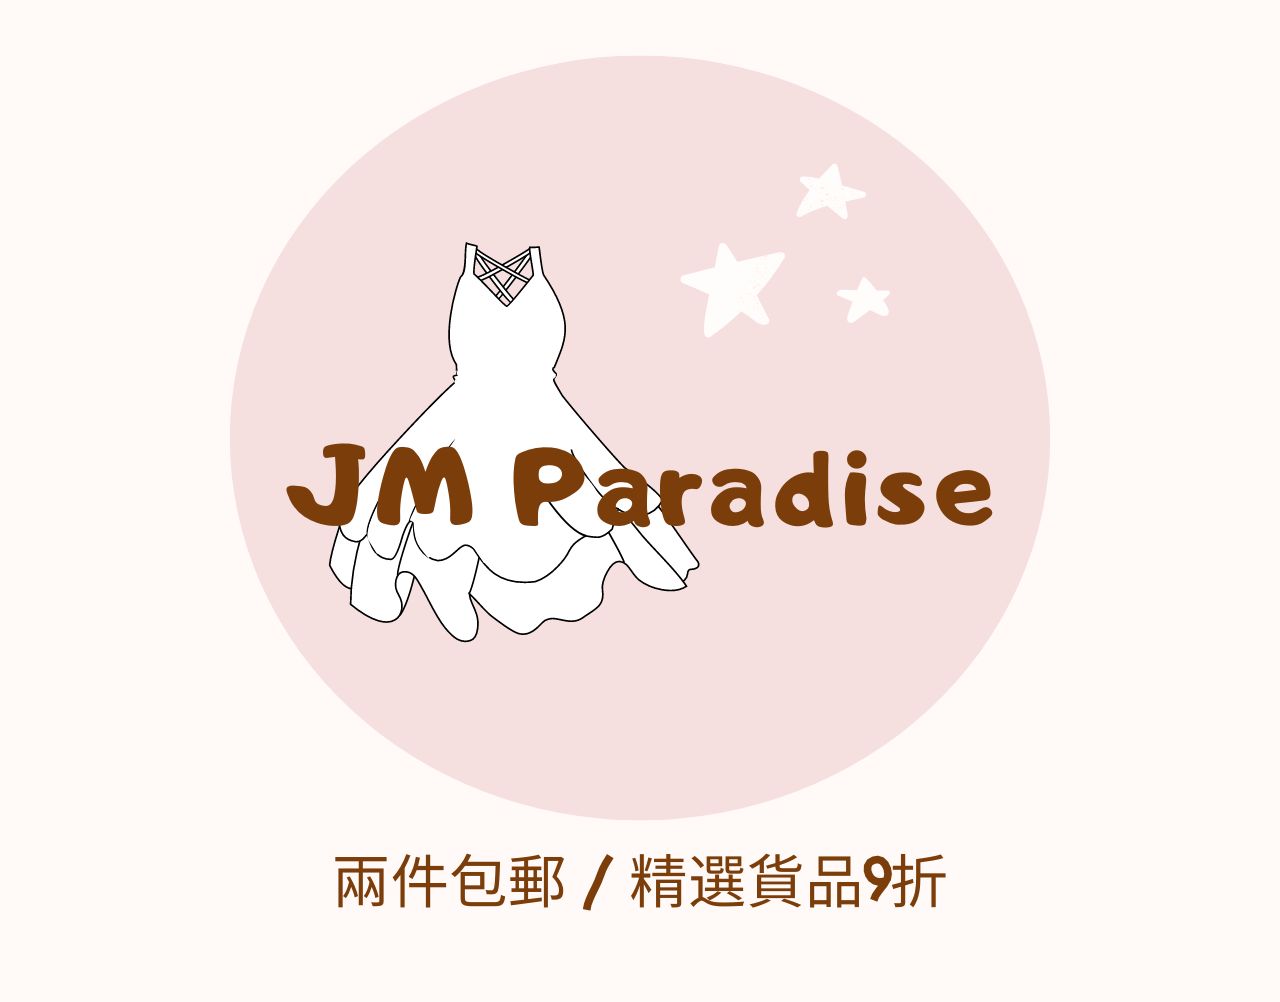 JM Paradise